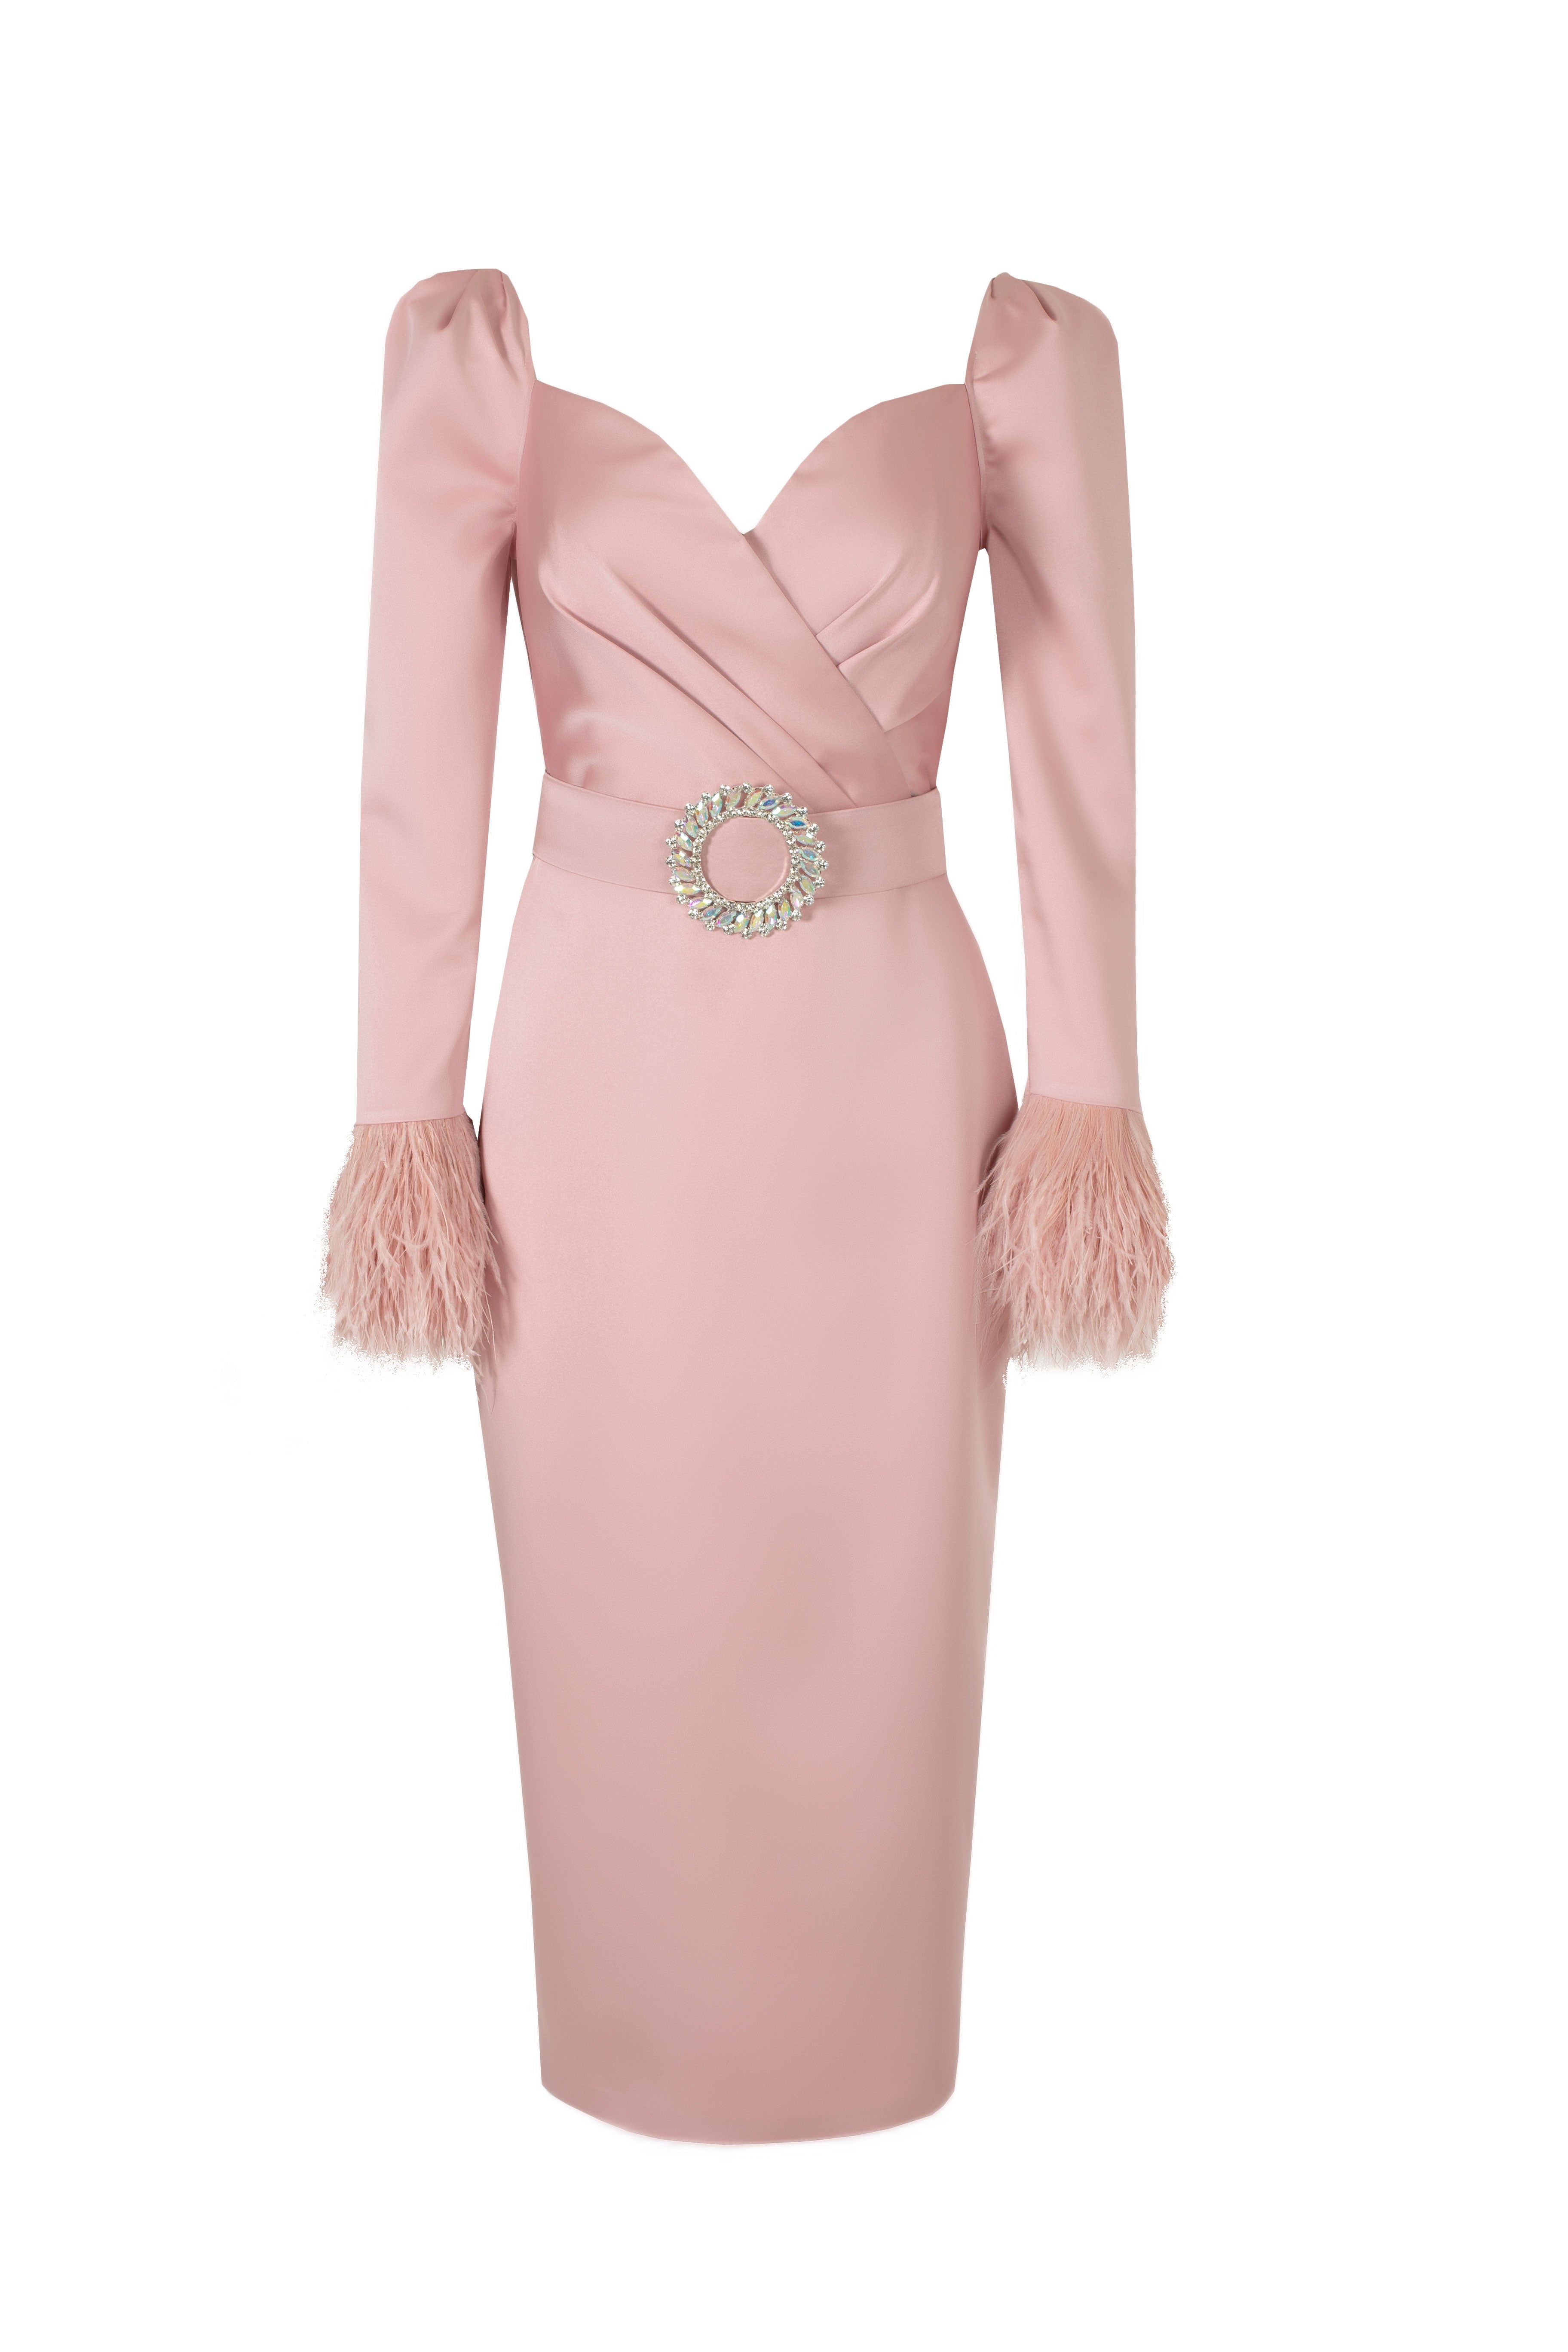  Lüks ve göz alıcı kokteyl elbise modellerinden Pink Diana Dress